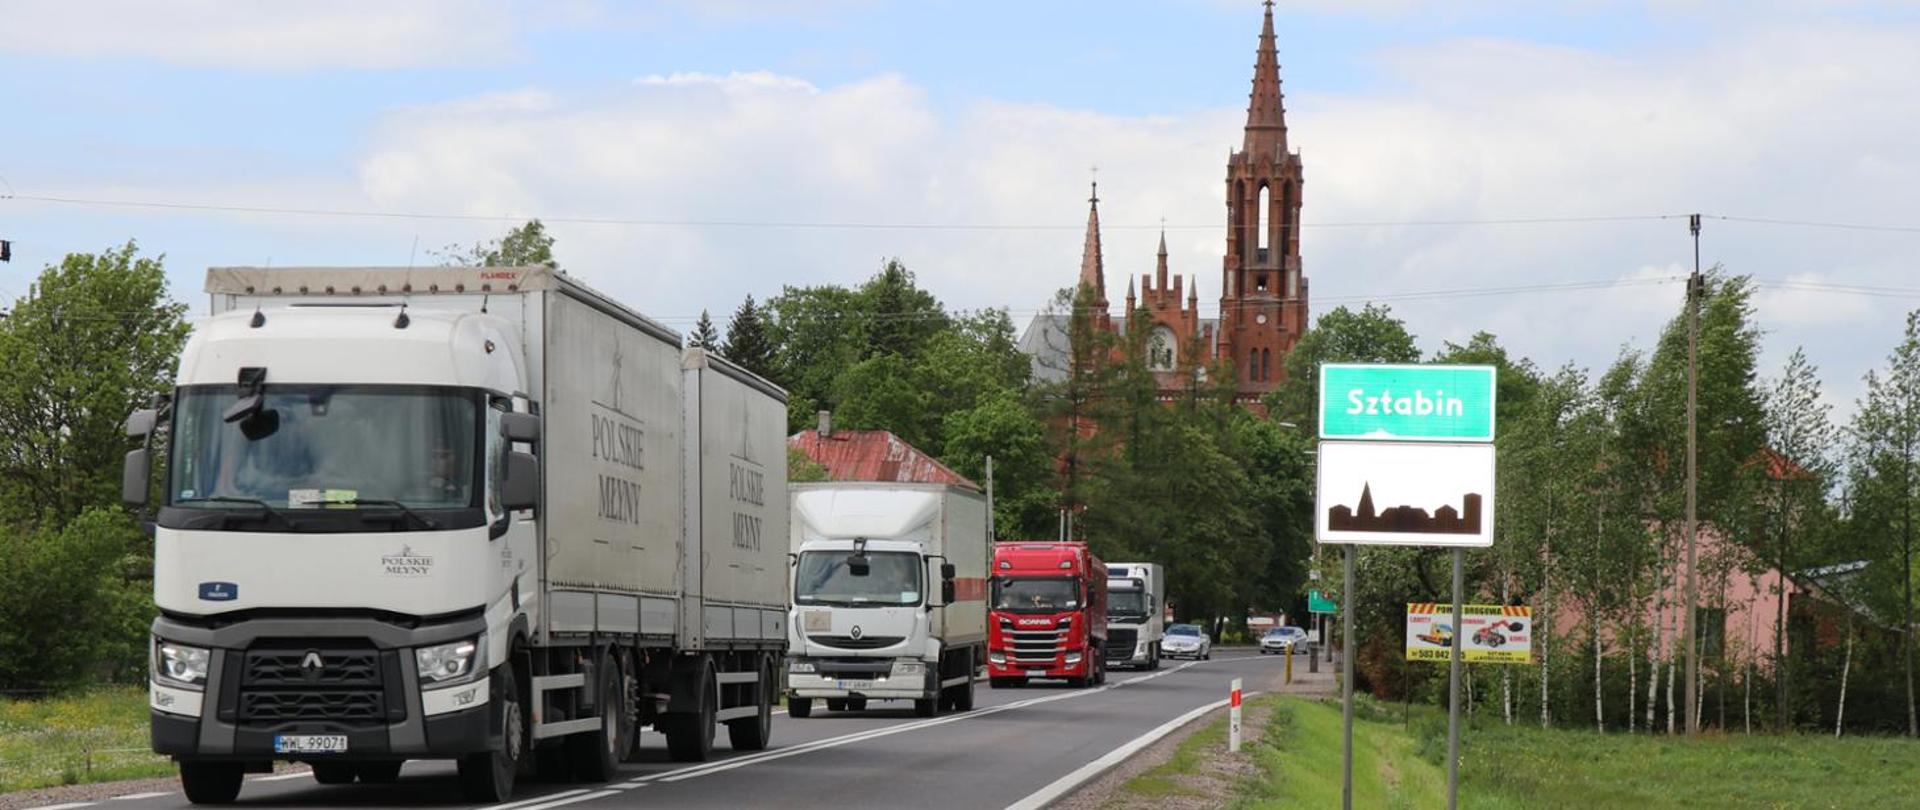 DK8 Sztabin samochody ciężarowe na wąskiej drodze, na drugim planie zabudowania i kościół